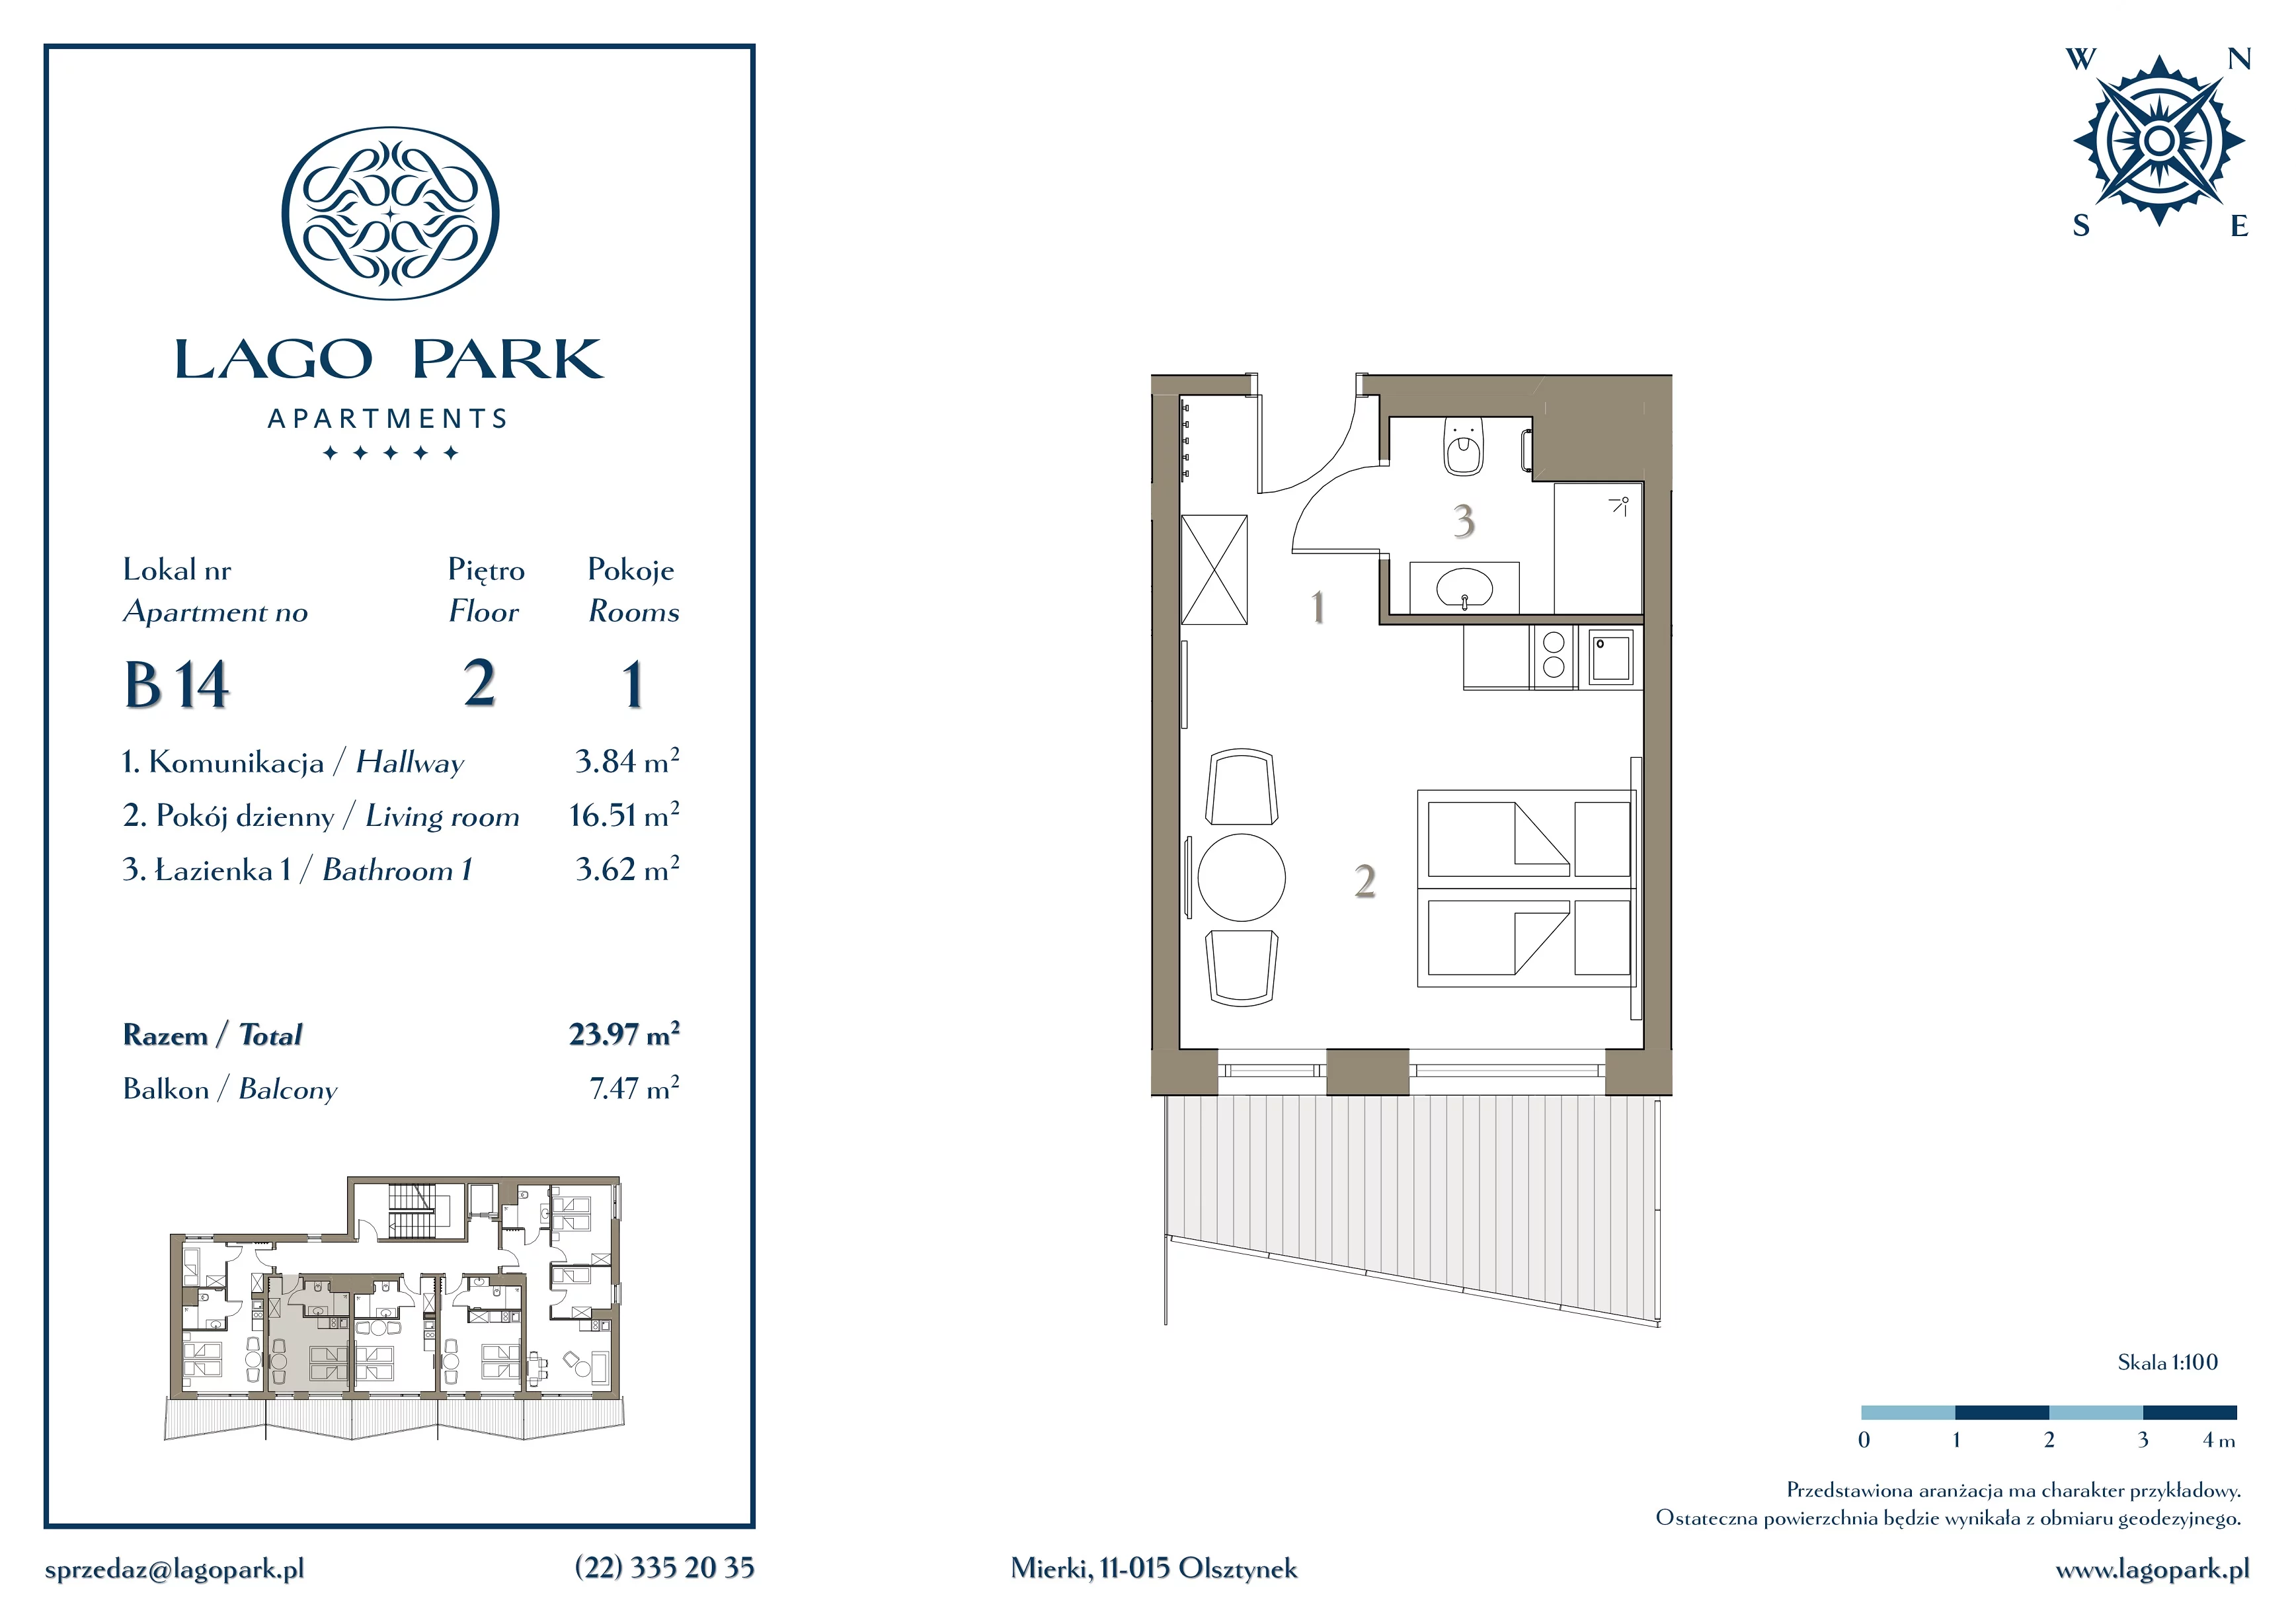 Apartament inwestycyjny 23,75 m², piętro 2, oferta nr B14, Lago Park Apartments by Aries, Mierki, Kołatek 2